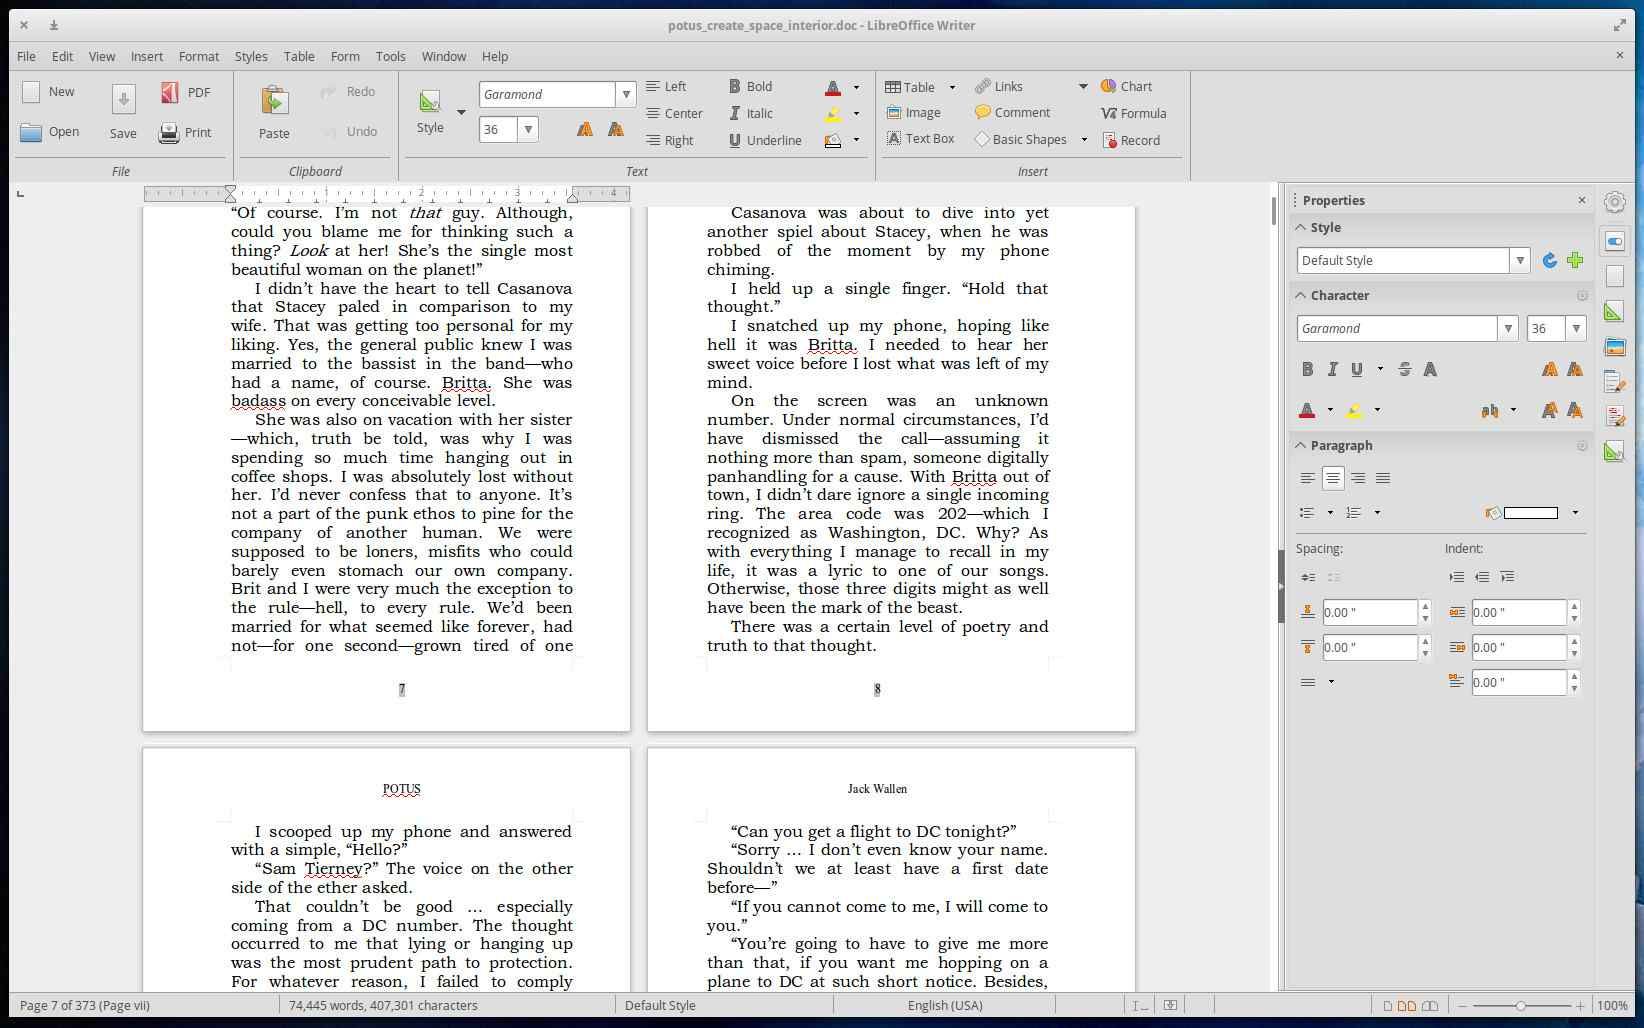 Офисный пакет LibreOffice